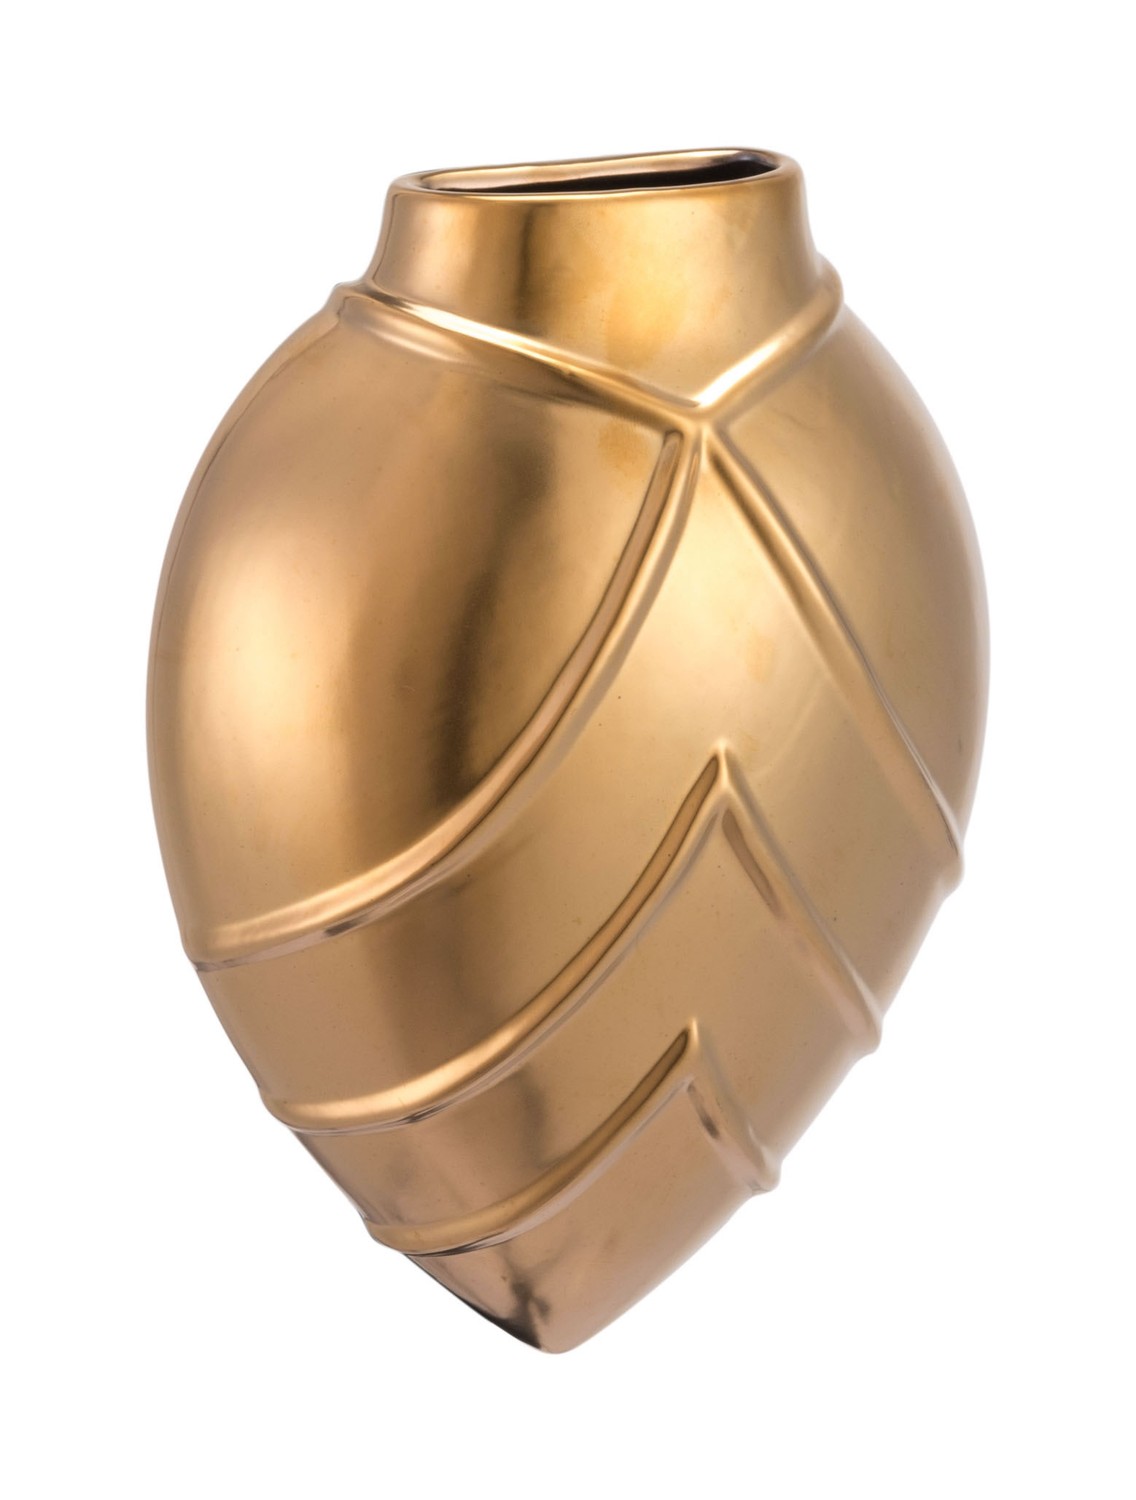 2.8" x 6.1" x 8.1" Matte Gold, Stoneware, Rayas Wall Vase